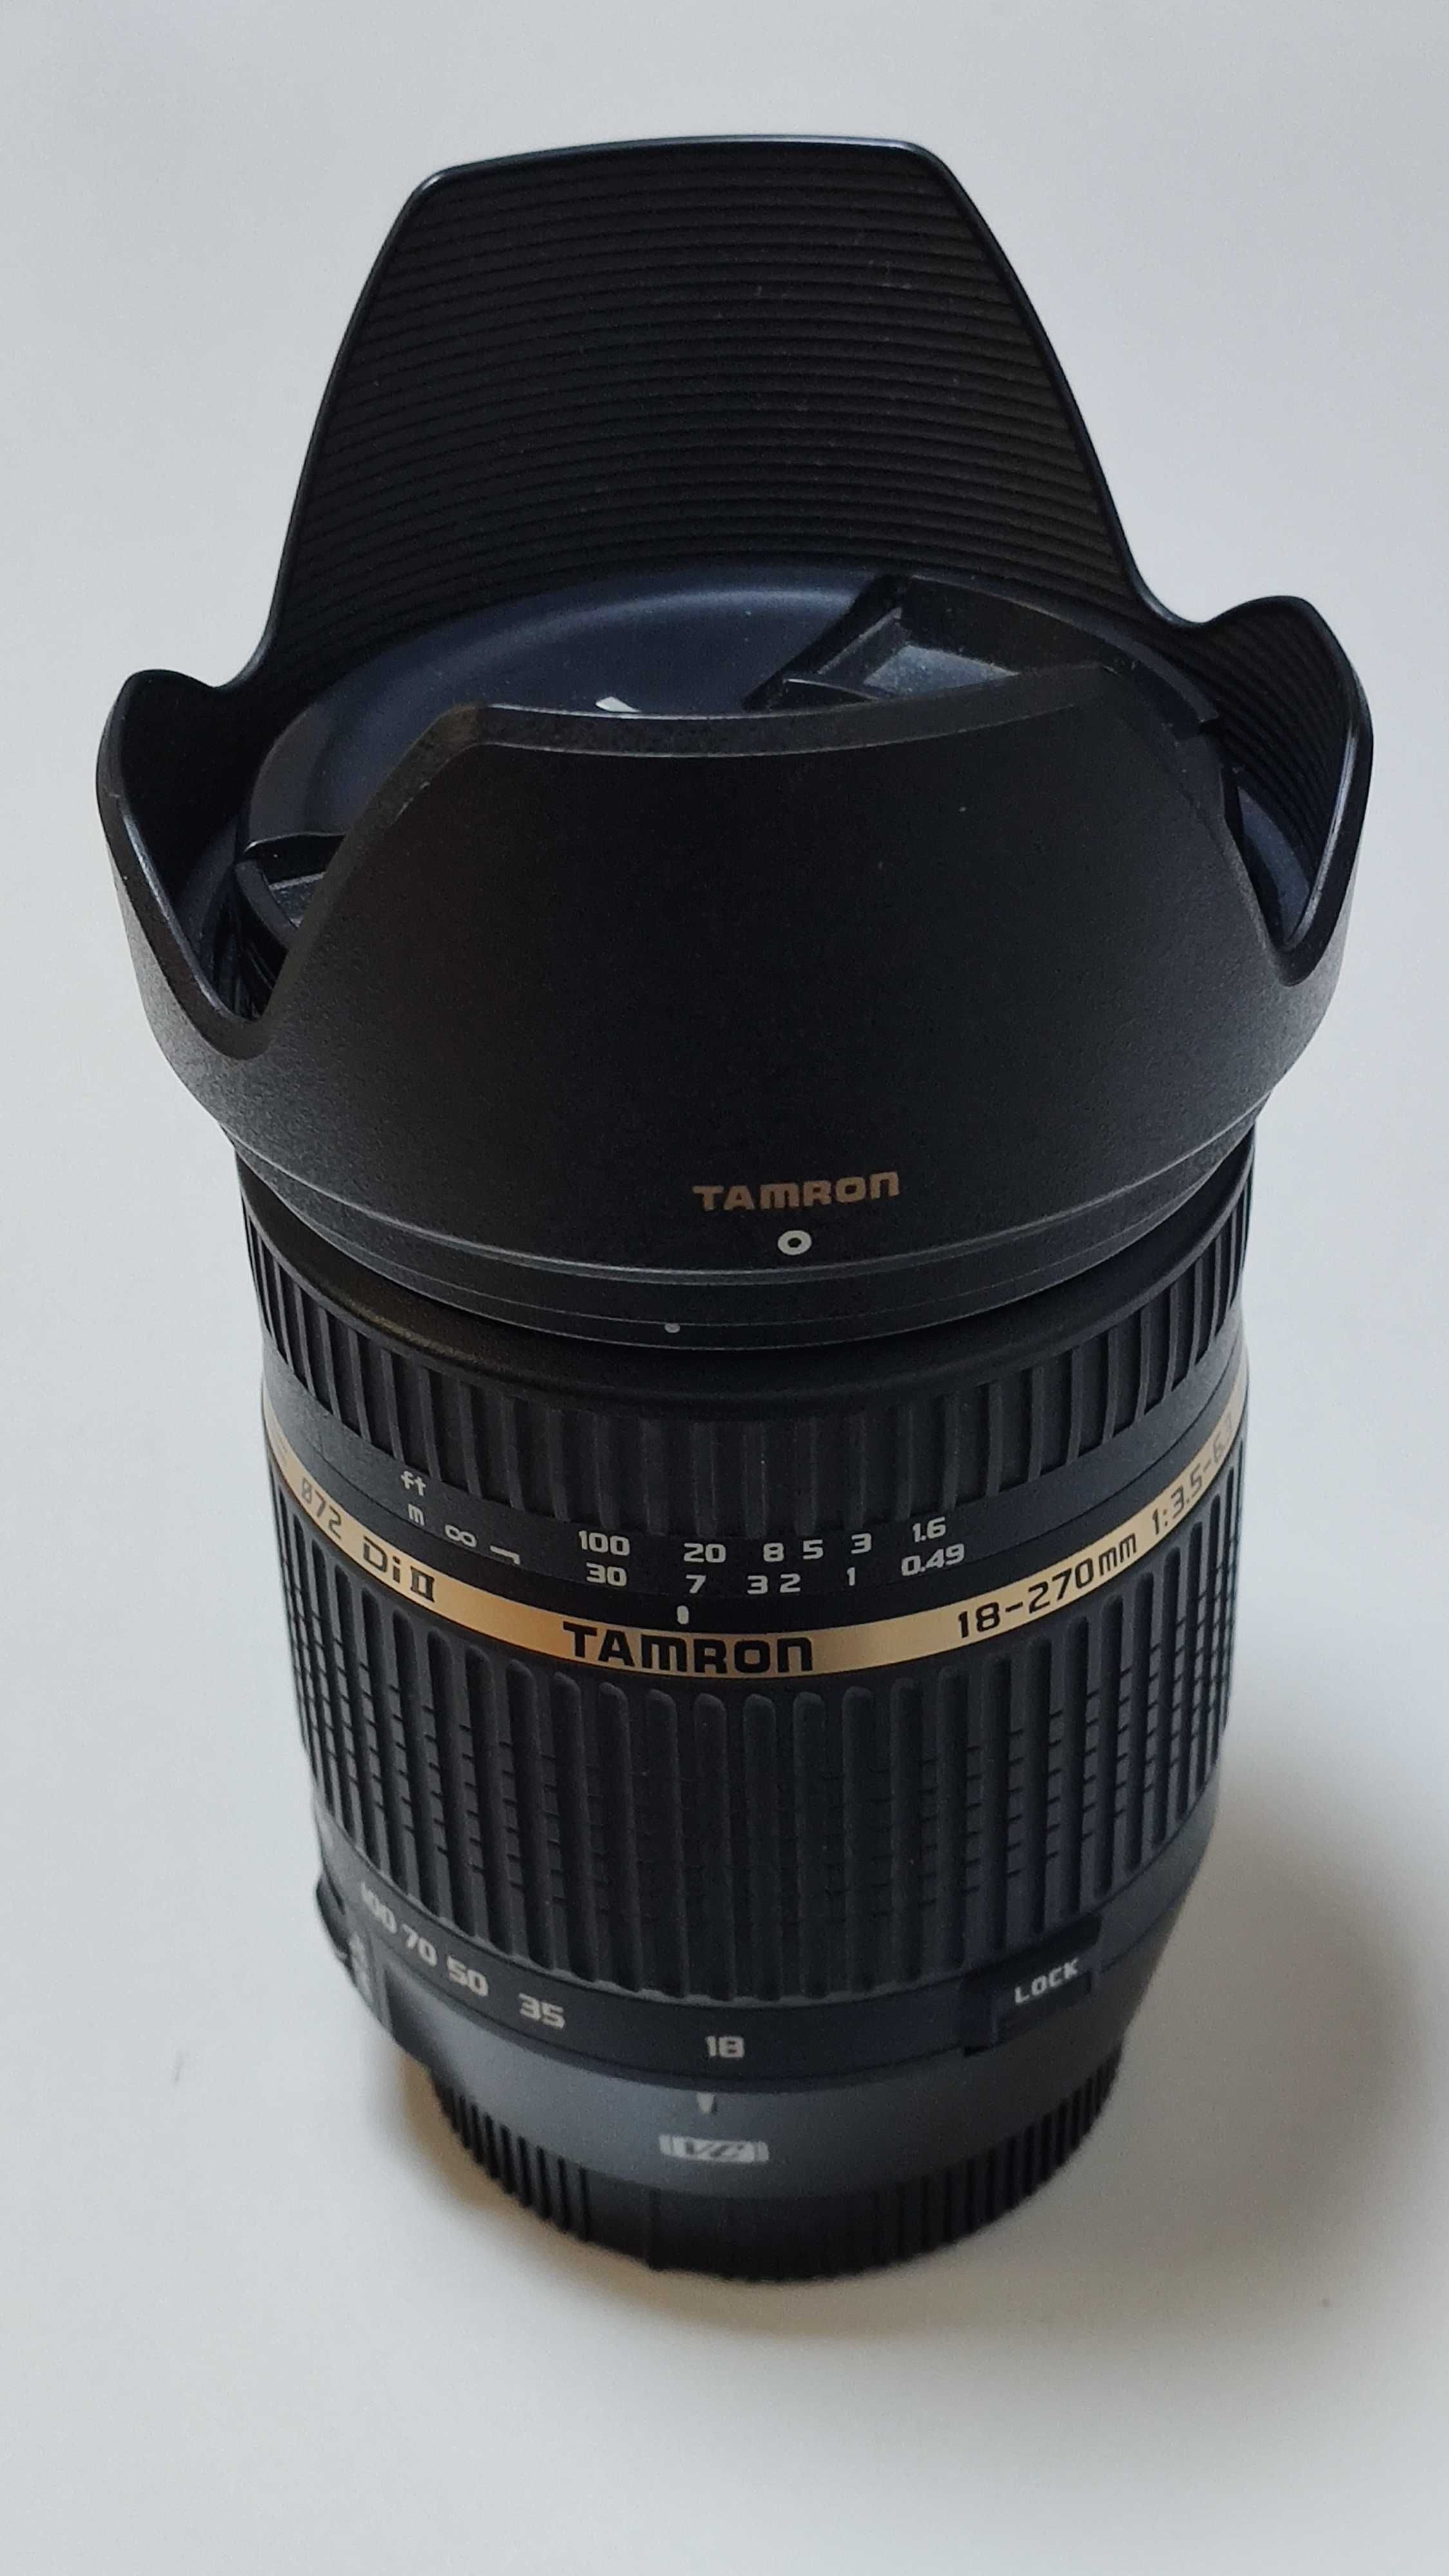 Obiectiv Tamron 18-270mm F/3.5-6.3 pt Canon AF + filtru Akira HMC 72mm